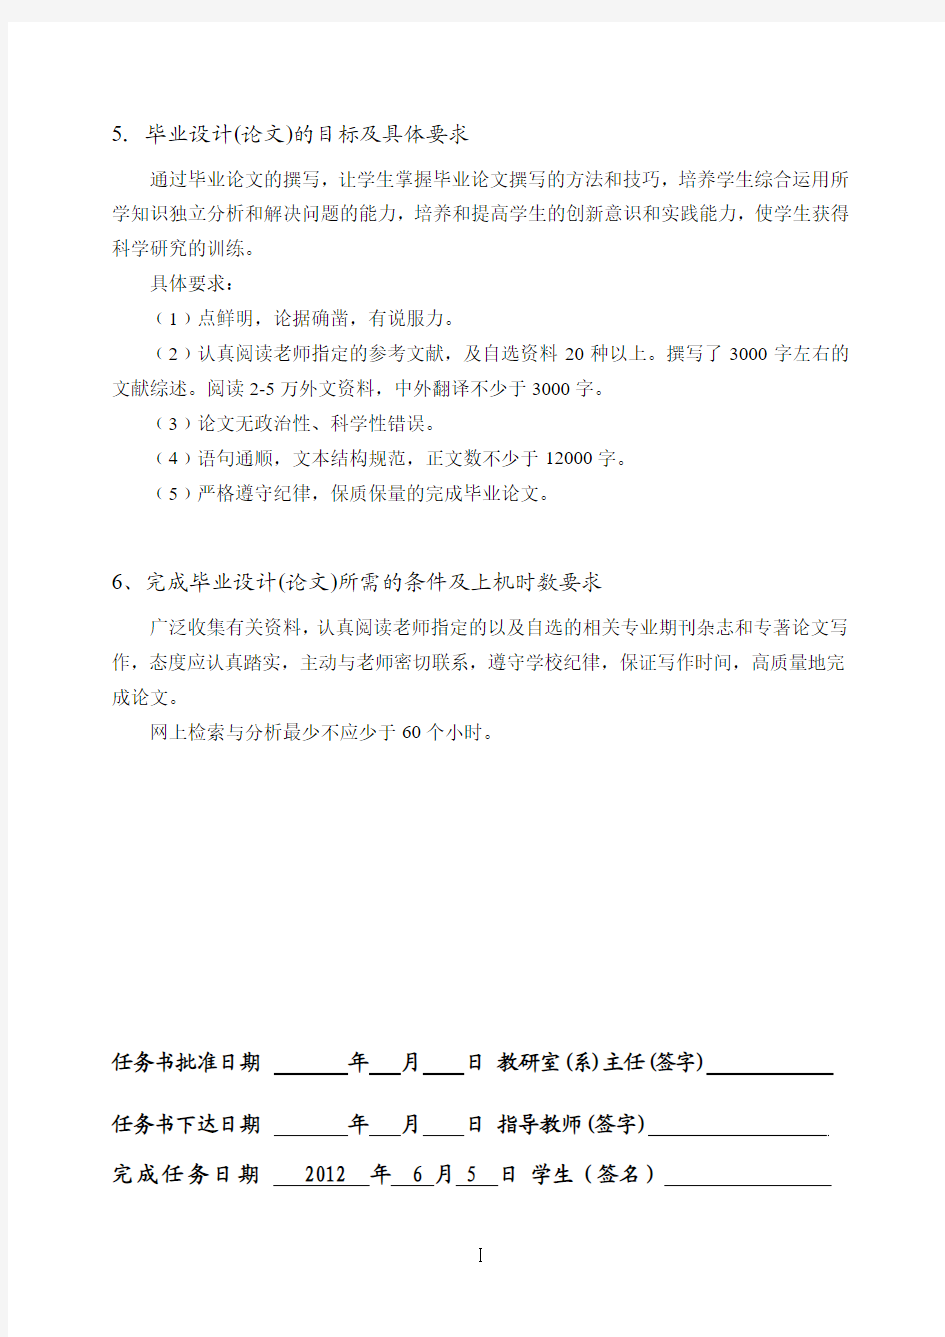 长江大学人力资源管理毕业设计(论文)任务书